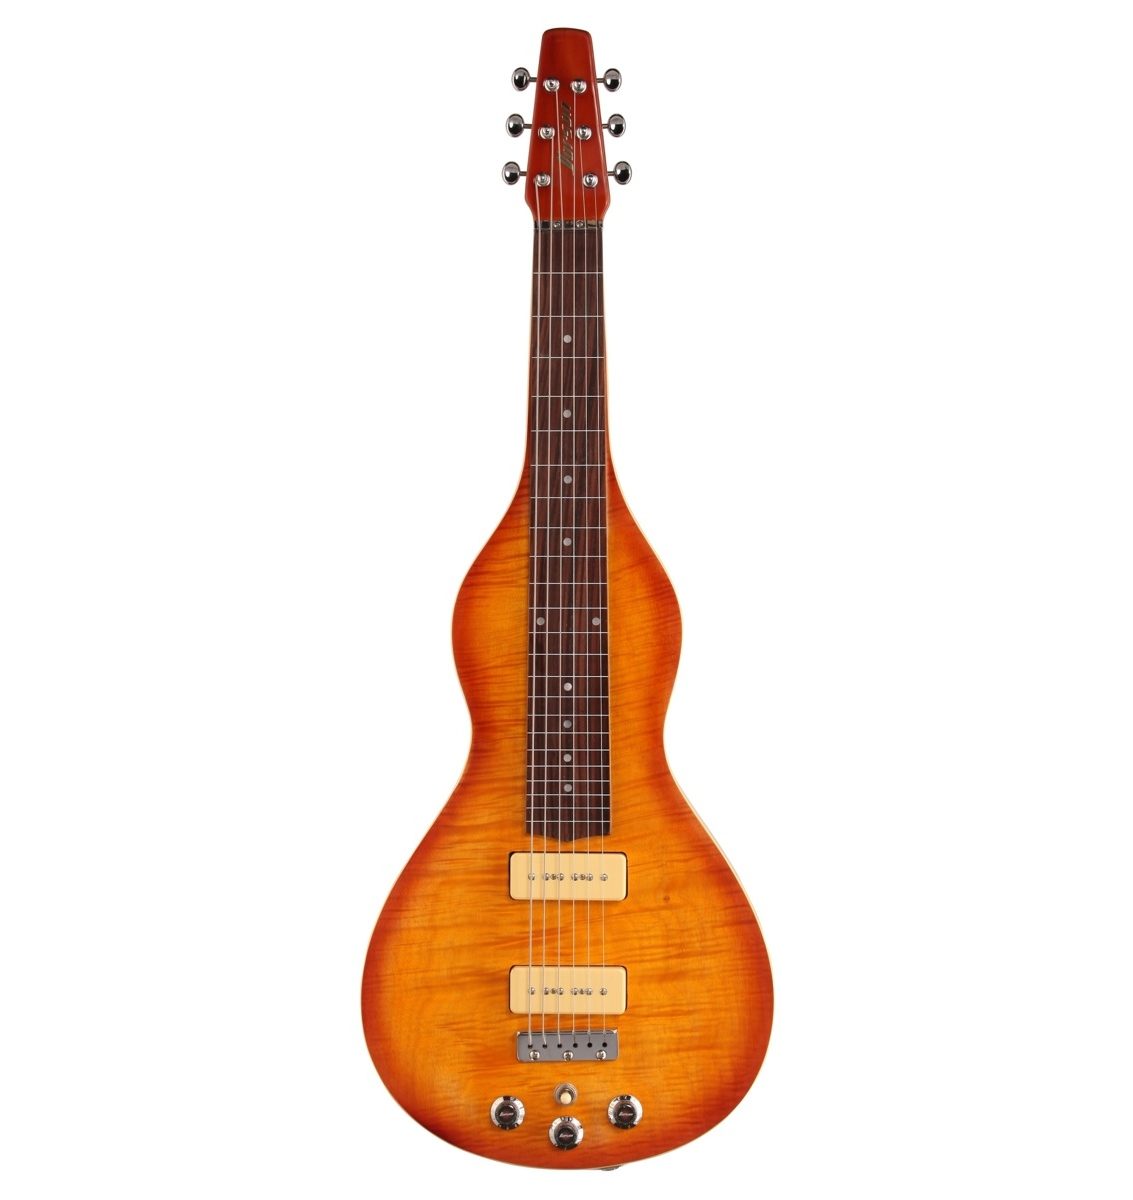 Vorson FLSL-200TS Lap Steel Guitar Pack